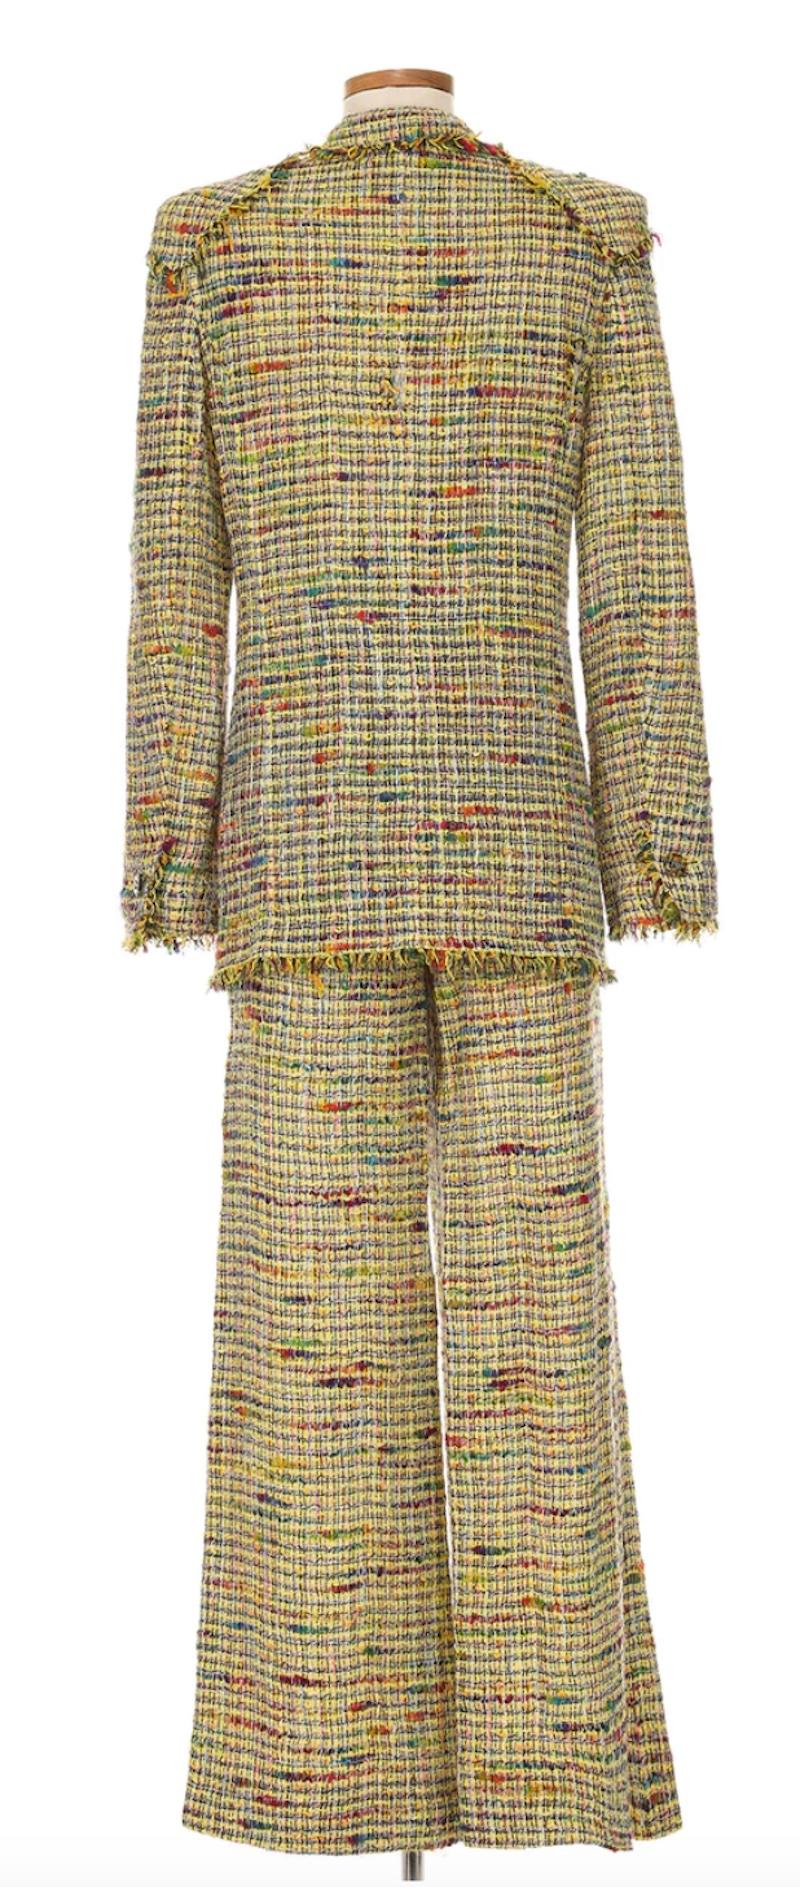 Chanel by Karl Lagerfeld Veste blazer et pantalon évasé

- Collection SALLENDEAU printemps 1998

- Tweed multicolore vibrant dans des teintes tissées de jaune, rouge, bleu et vert.

- La veste se boutonne sur le devant et le pantalon se ferme à